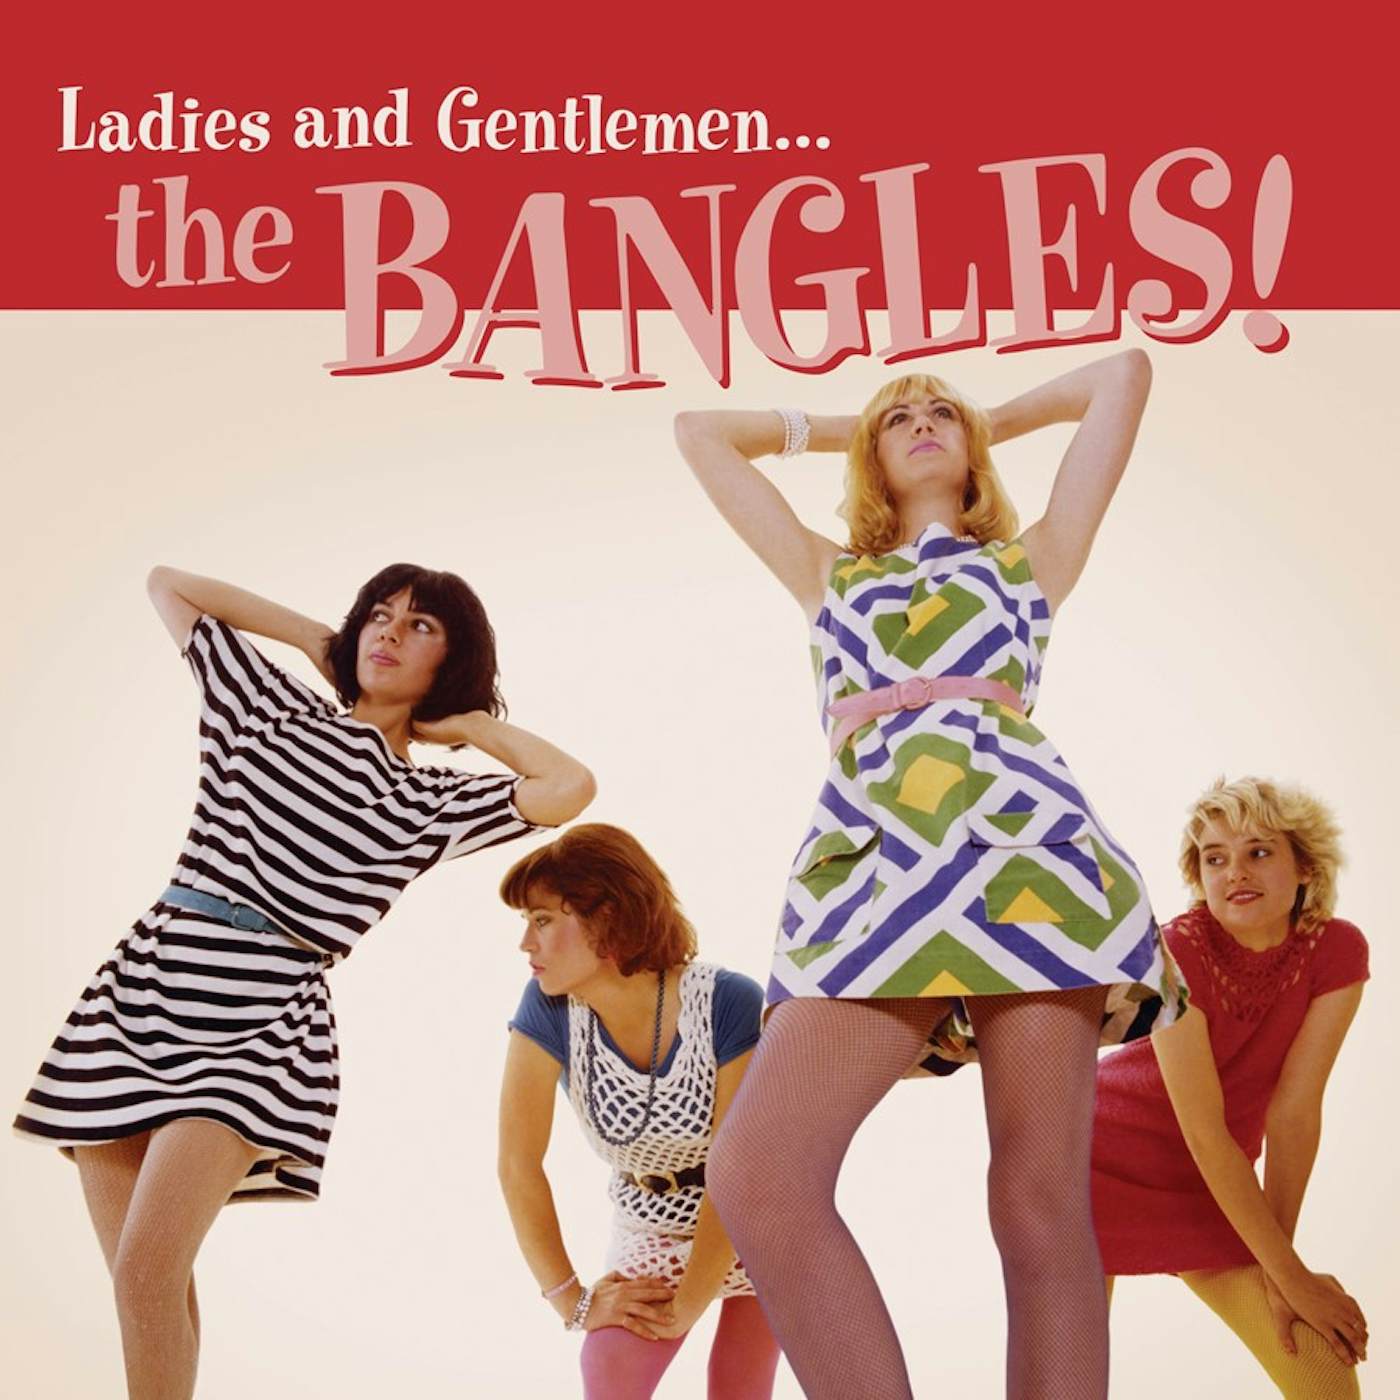 LADIES & GENTLEMEN: THE BANGLES CD